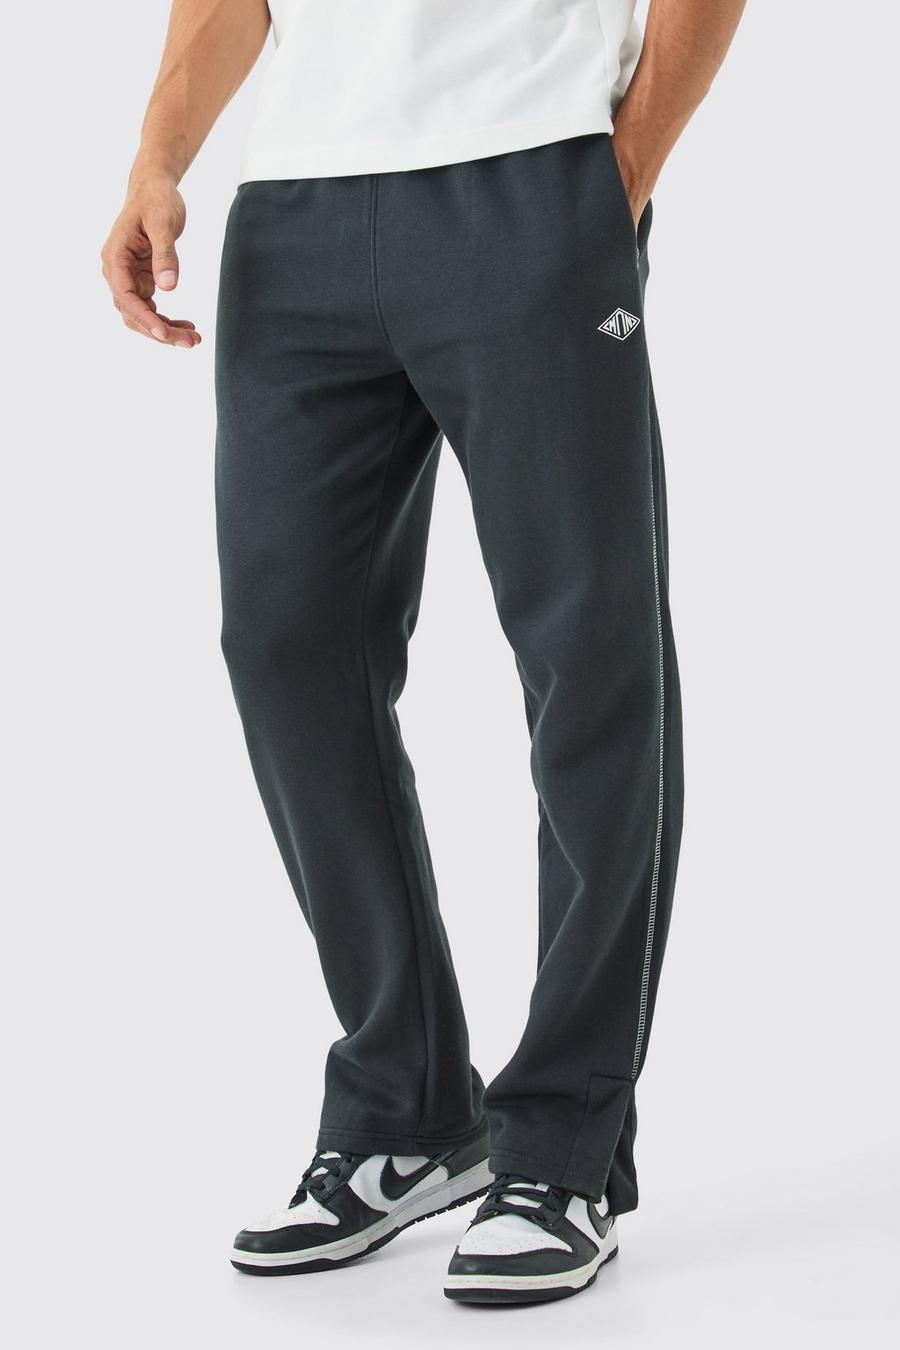 Pantaloni tuta Man Regular Fit con cuciture a contrasto e spacco sul fondo, Black